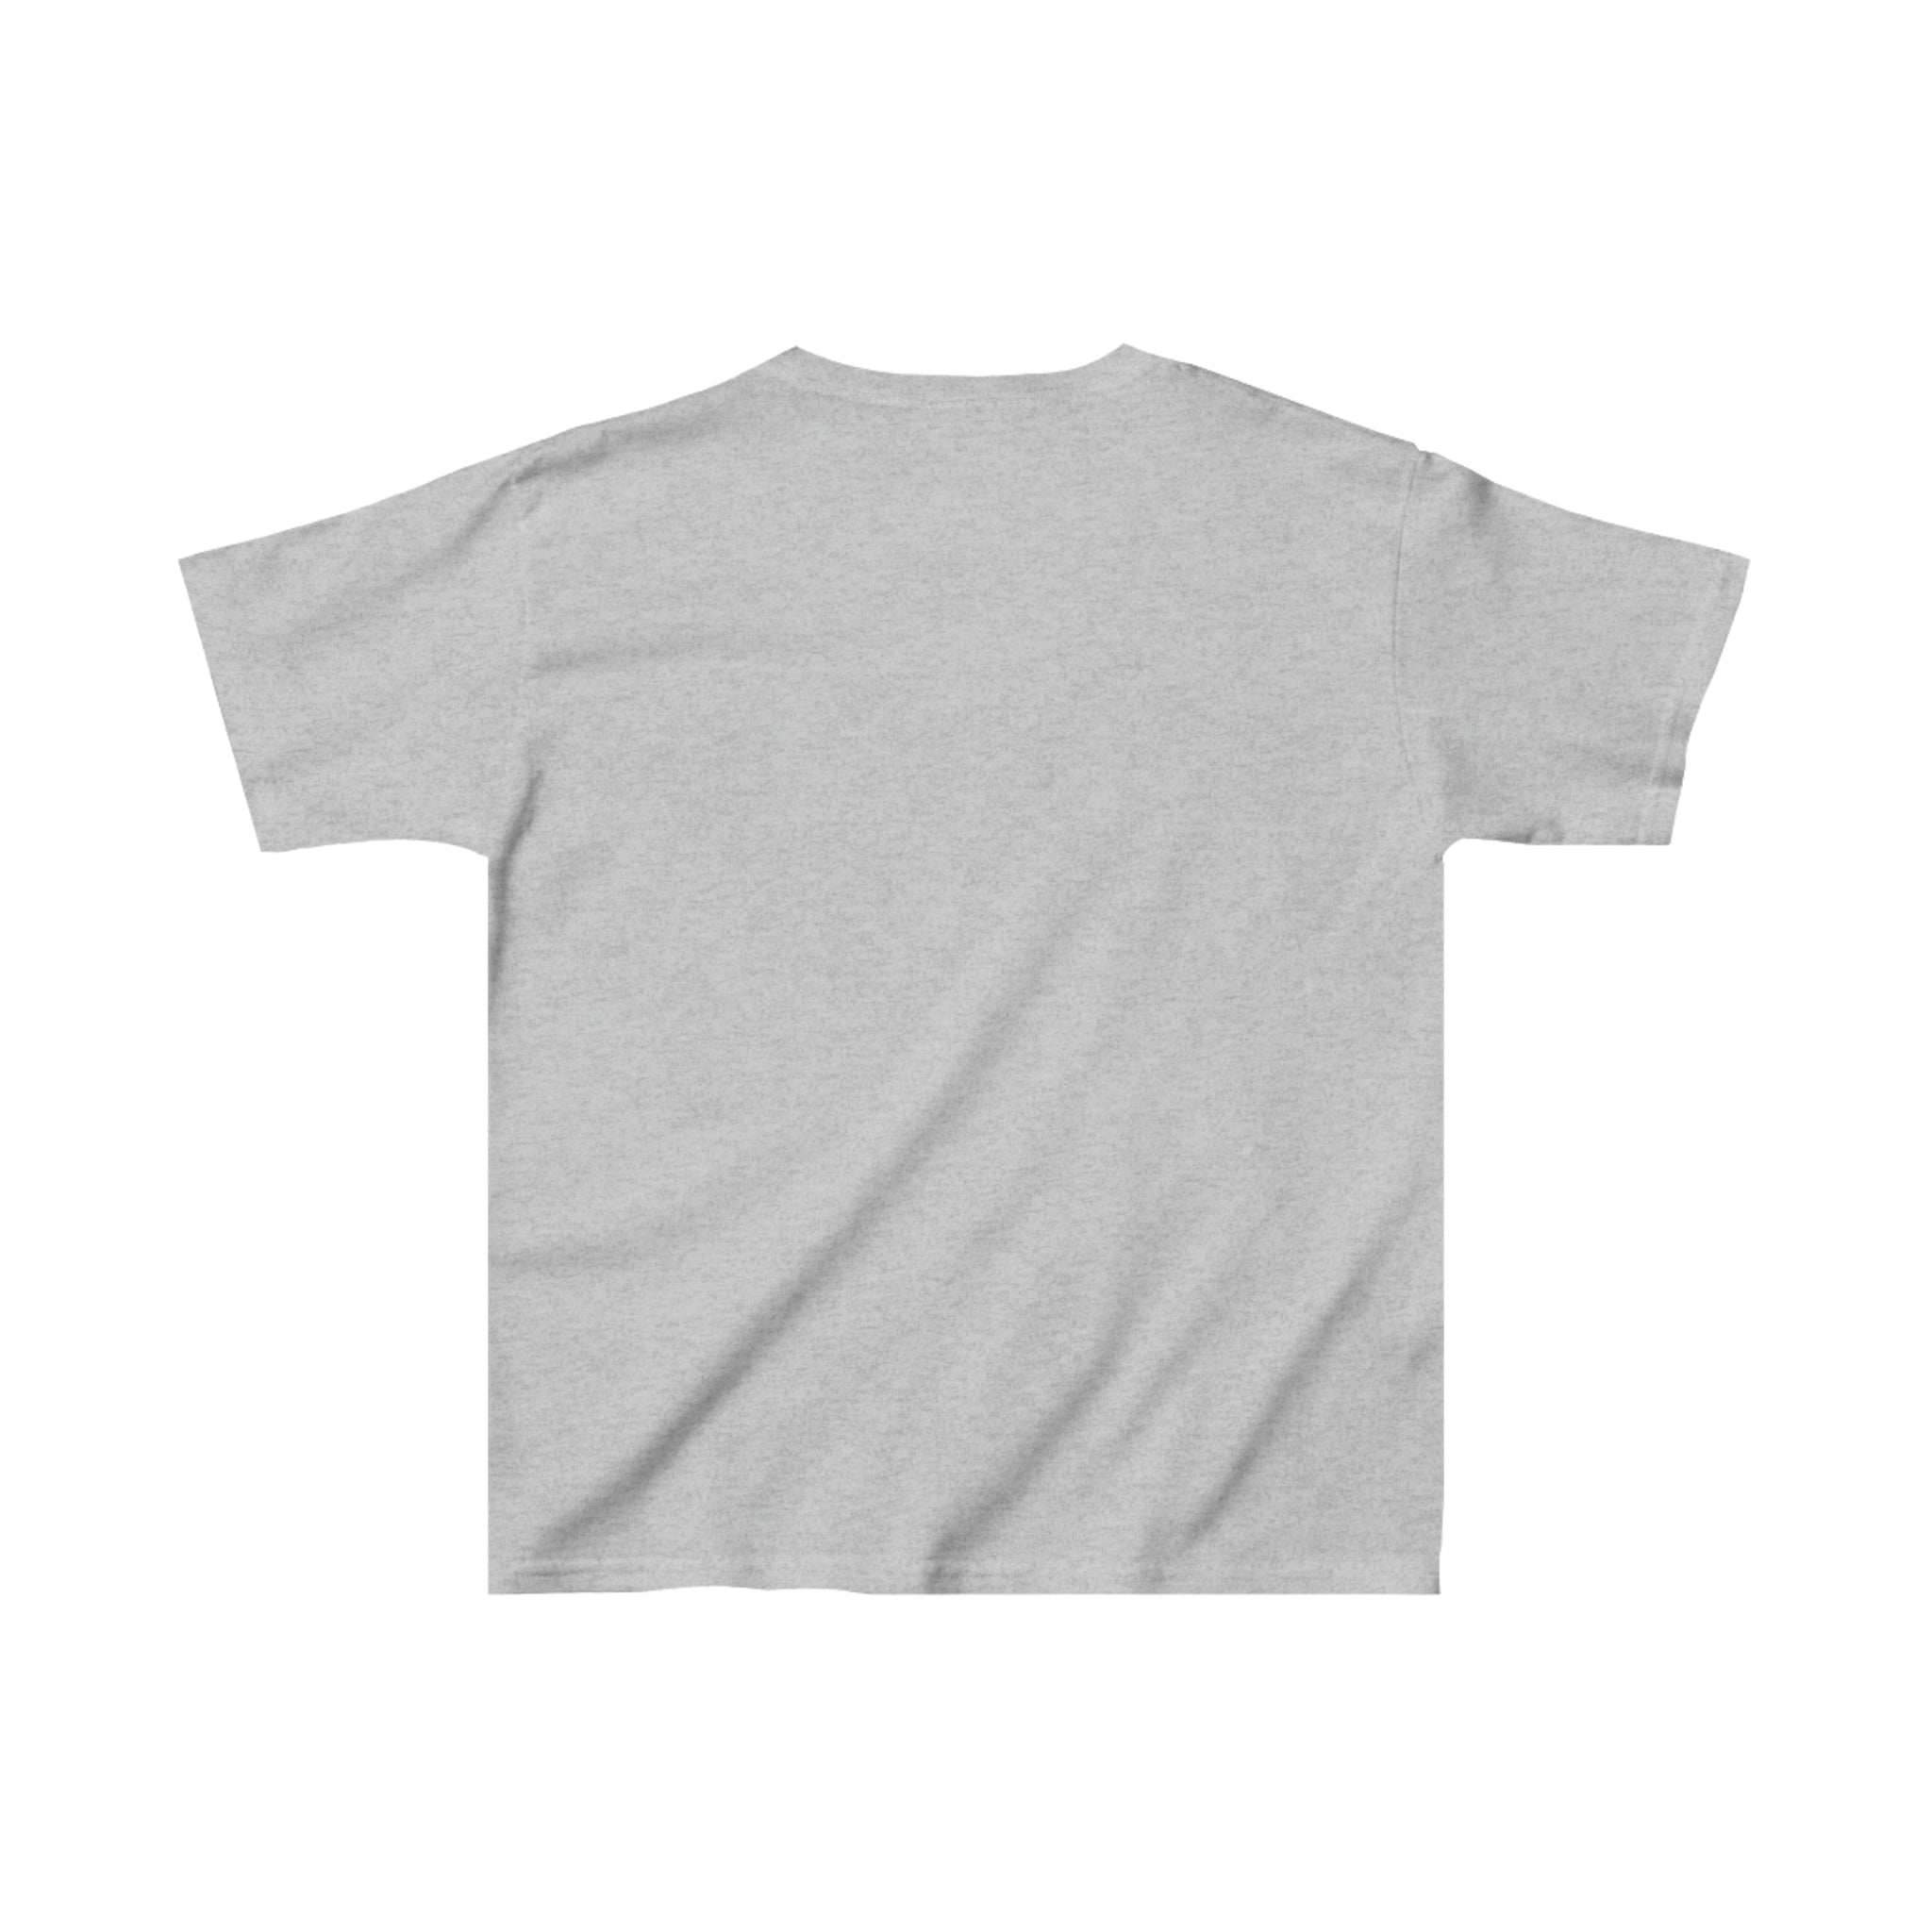 Saint Paul Vulcans T-Shirt (Youth)